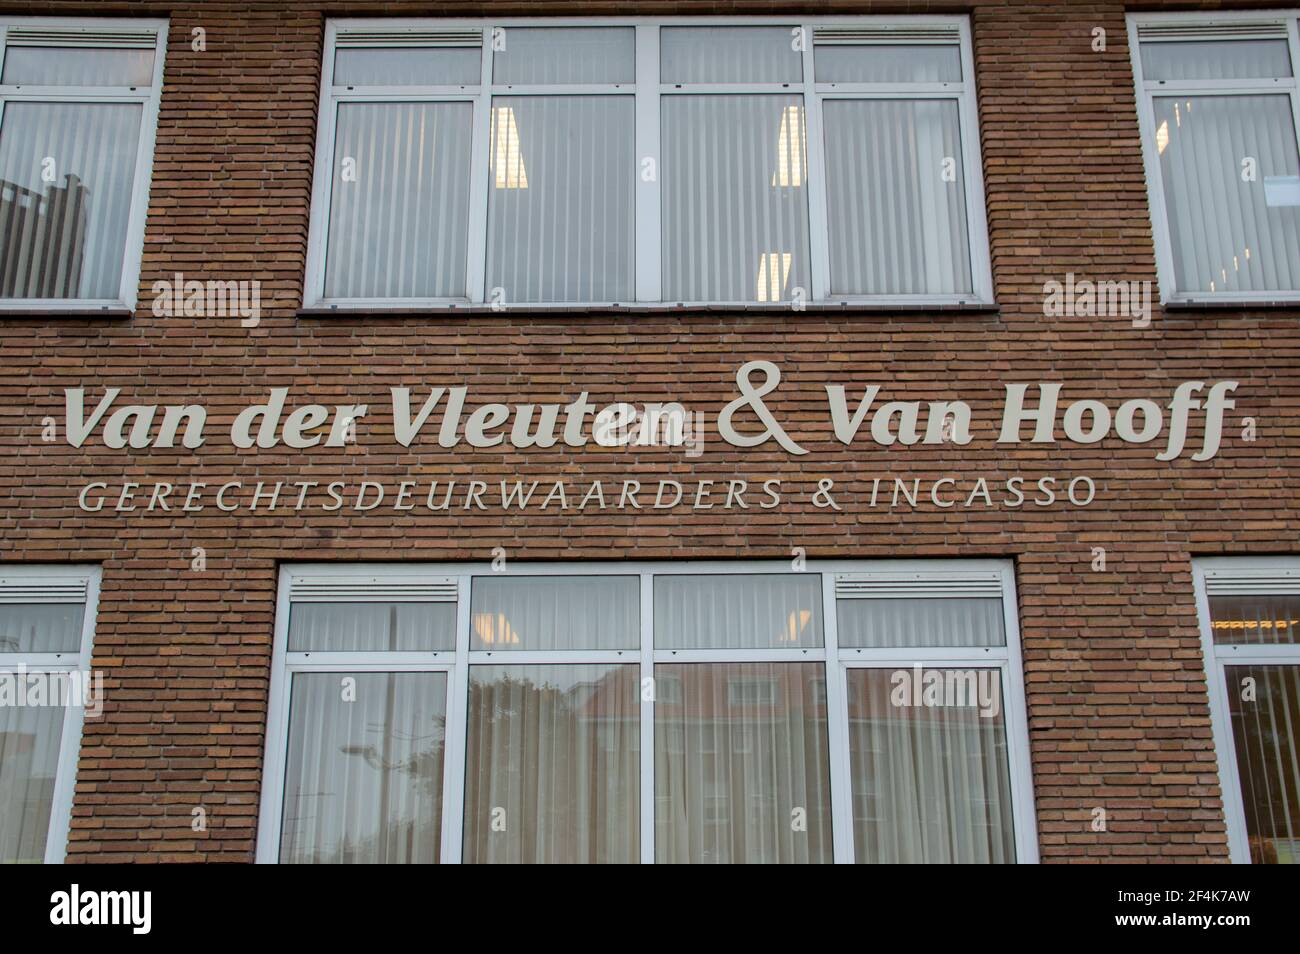 Panneaux publicitaires Van Der Vleuten et Van Hooff à Den Helder Pays-Bas 23-9-2019 Banque D'Images